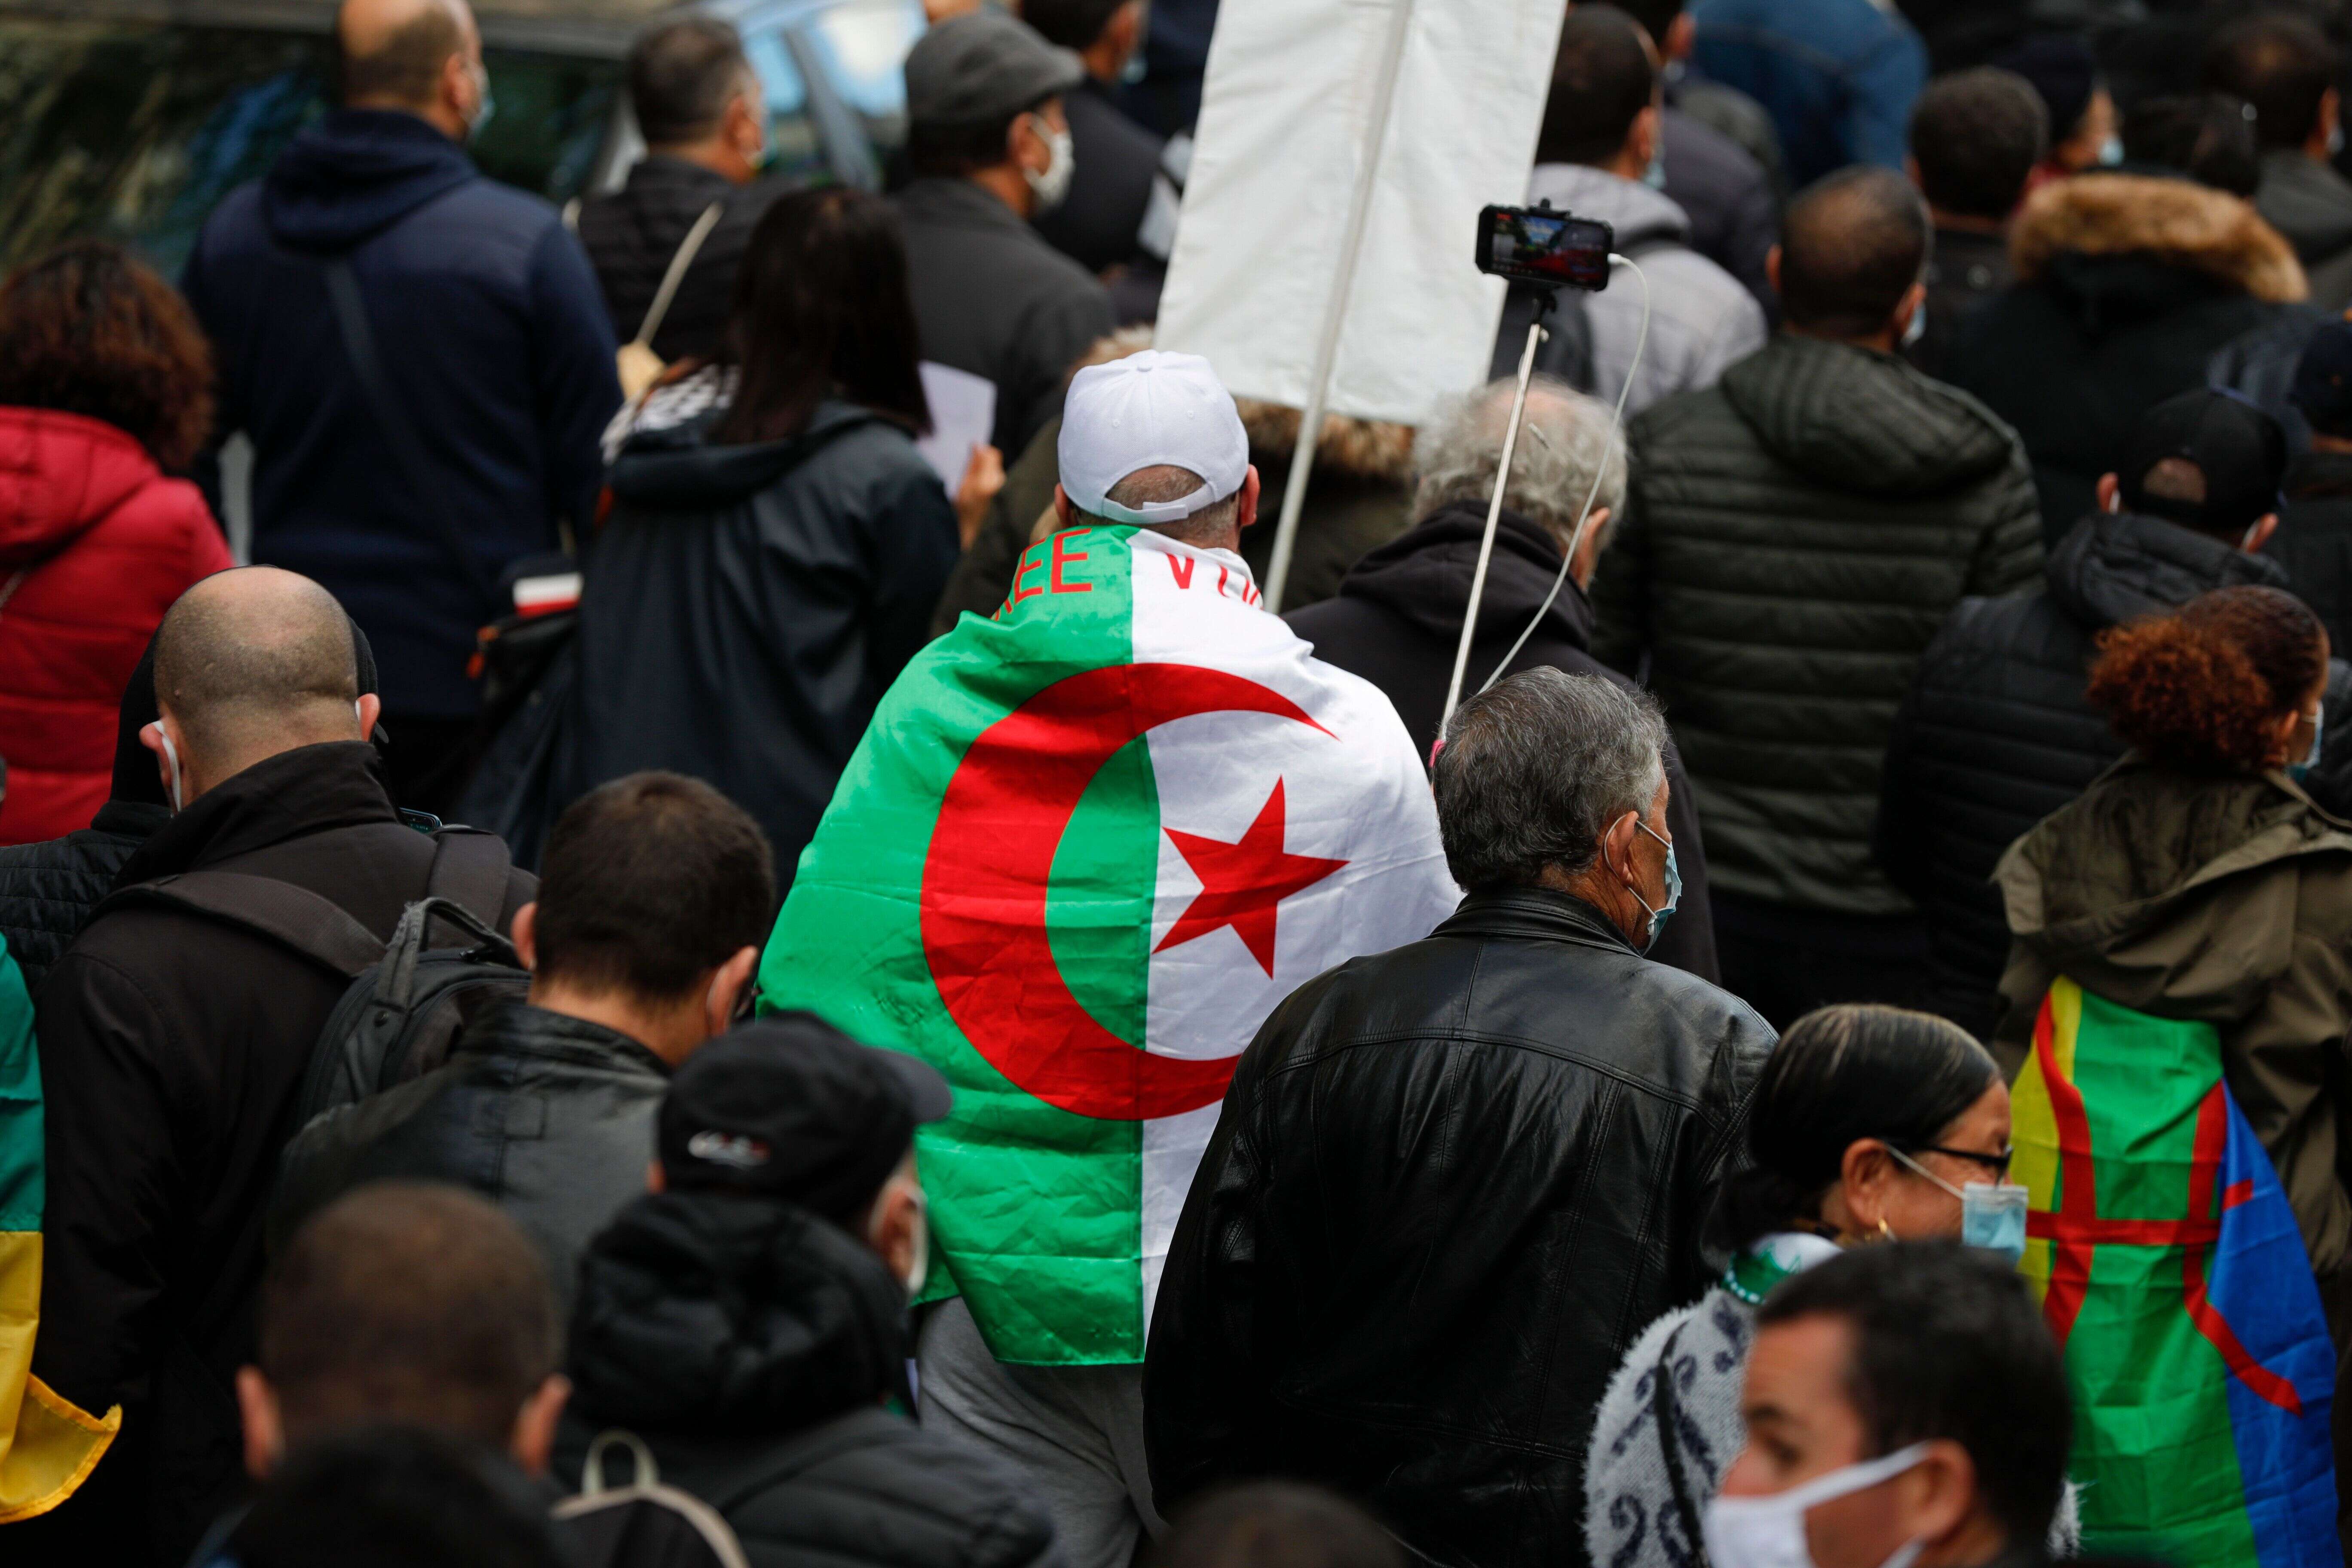 Les accusations de torture portées par un étudiant contre les forces de sécurité suscitent la polémique en Algérie (image d'illustration prise à Paris en octobre 2020).